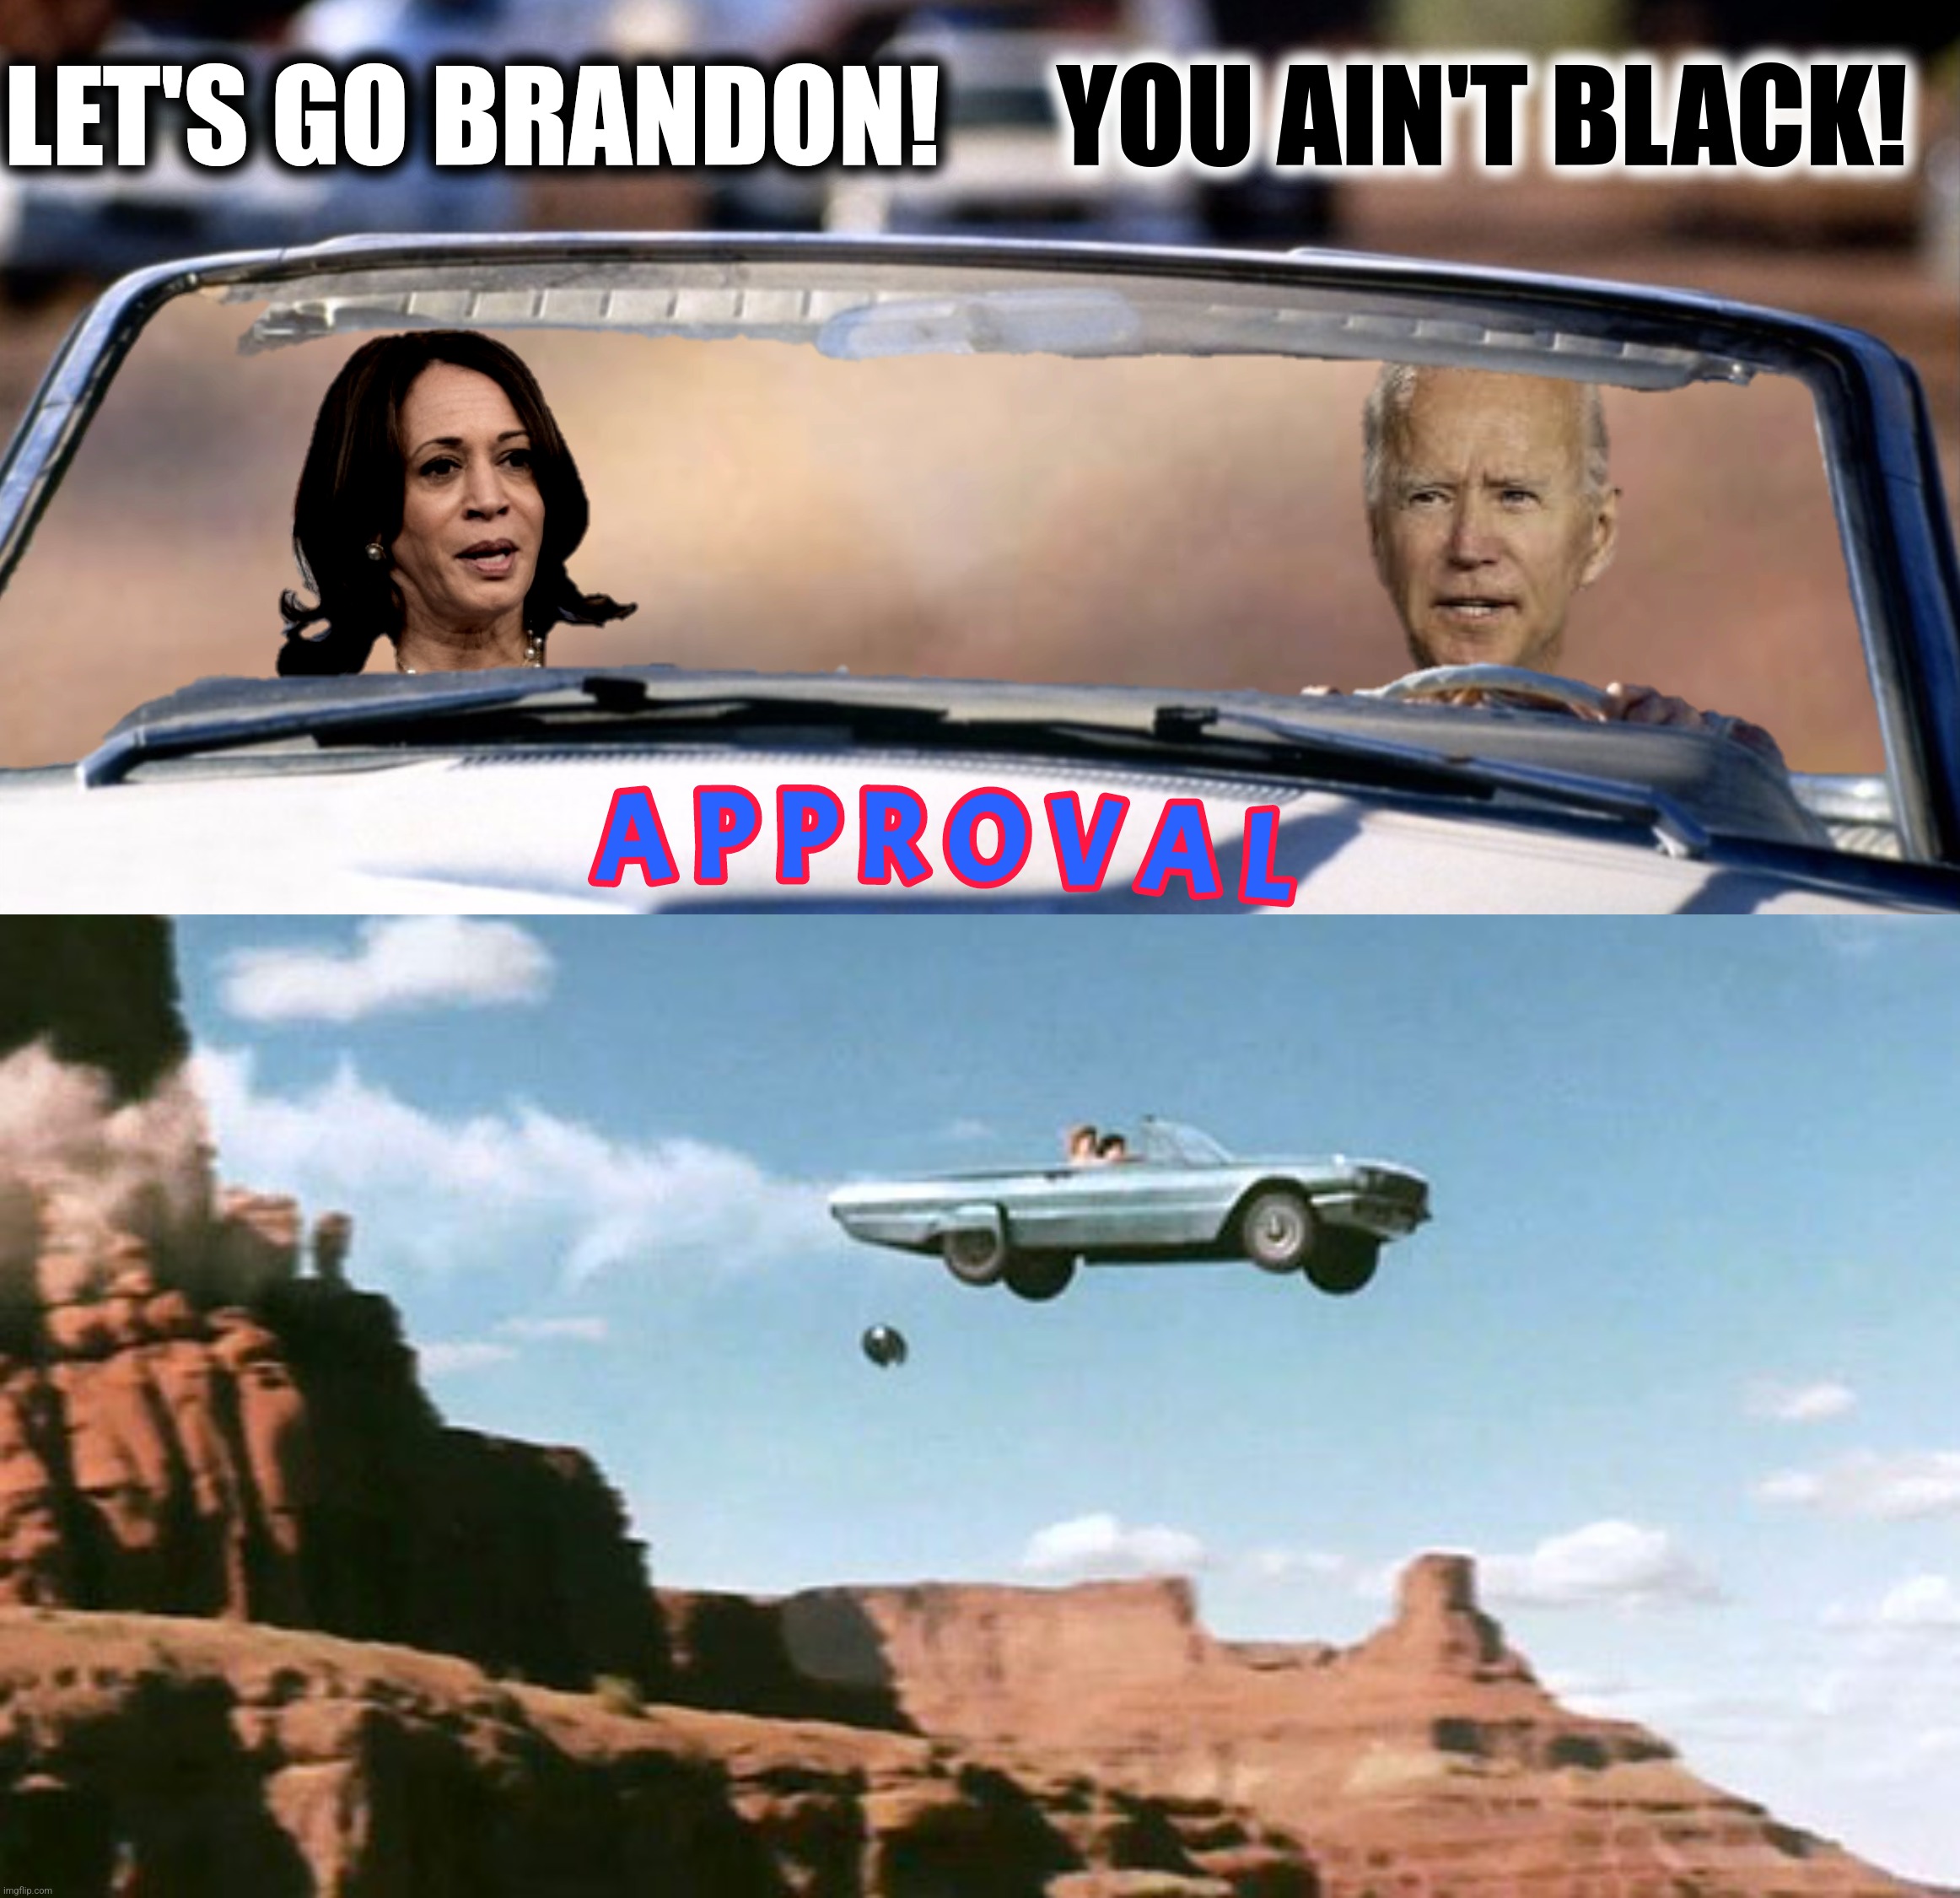 LET'S GO BRANDON! YOU AIN'T BLACK! | made w/ Imgflip meme maker